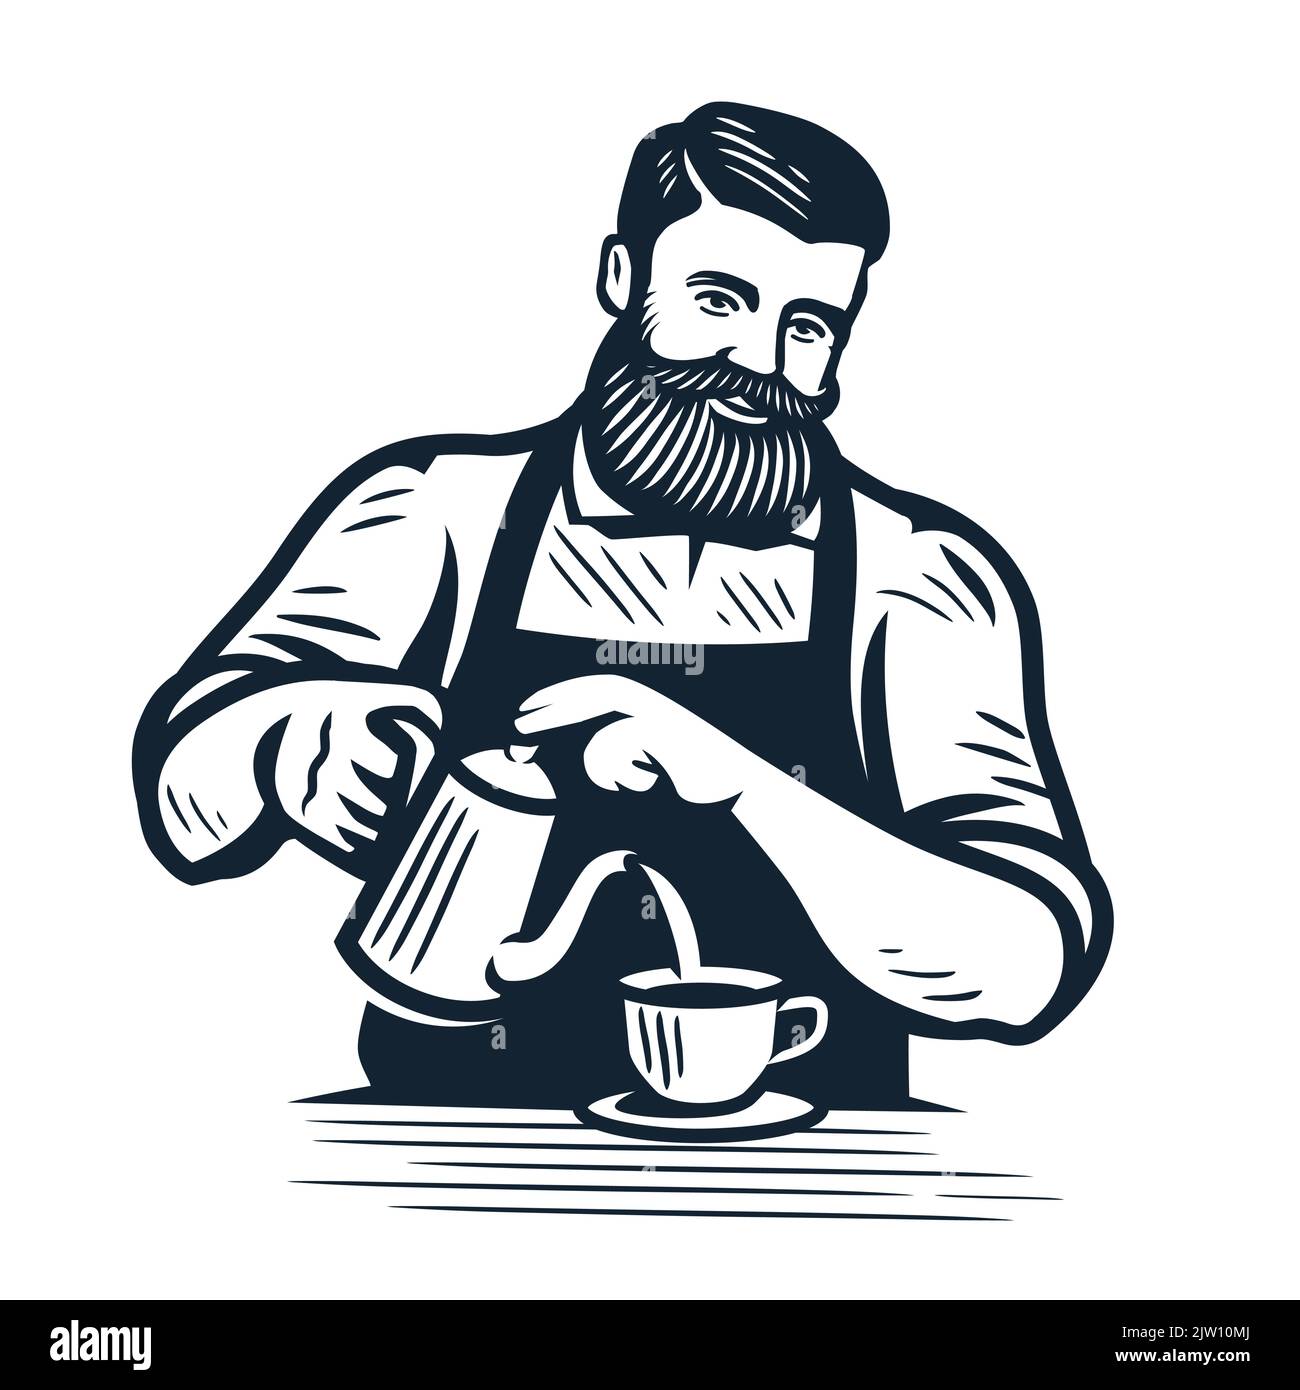 Der Barista gießt die Creme in die Kaffeetasse. Design-Element für Restaurant- oder Café-Menü. Herstellung Handwerk Kaffee trinken Vektor Stock Vektor